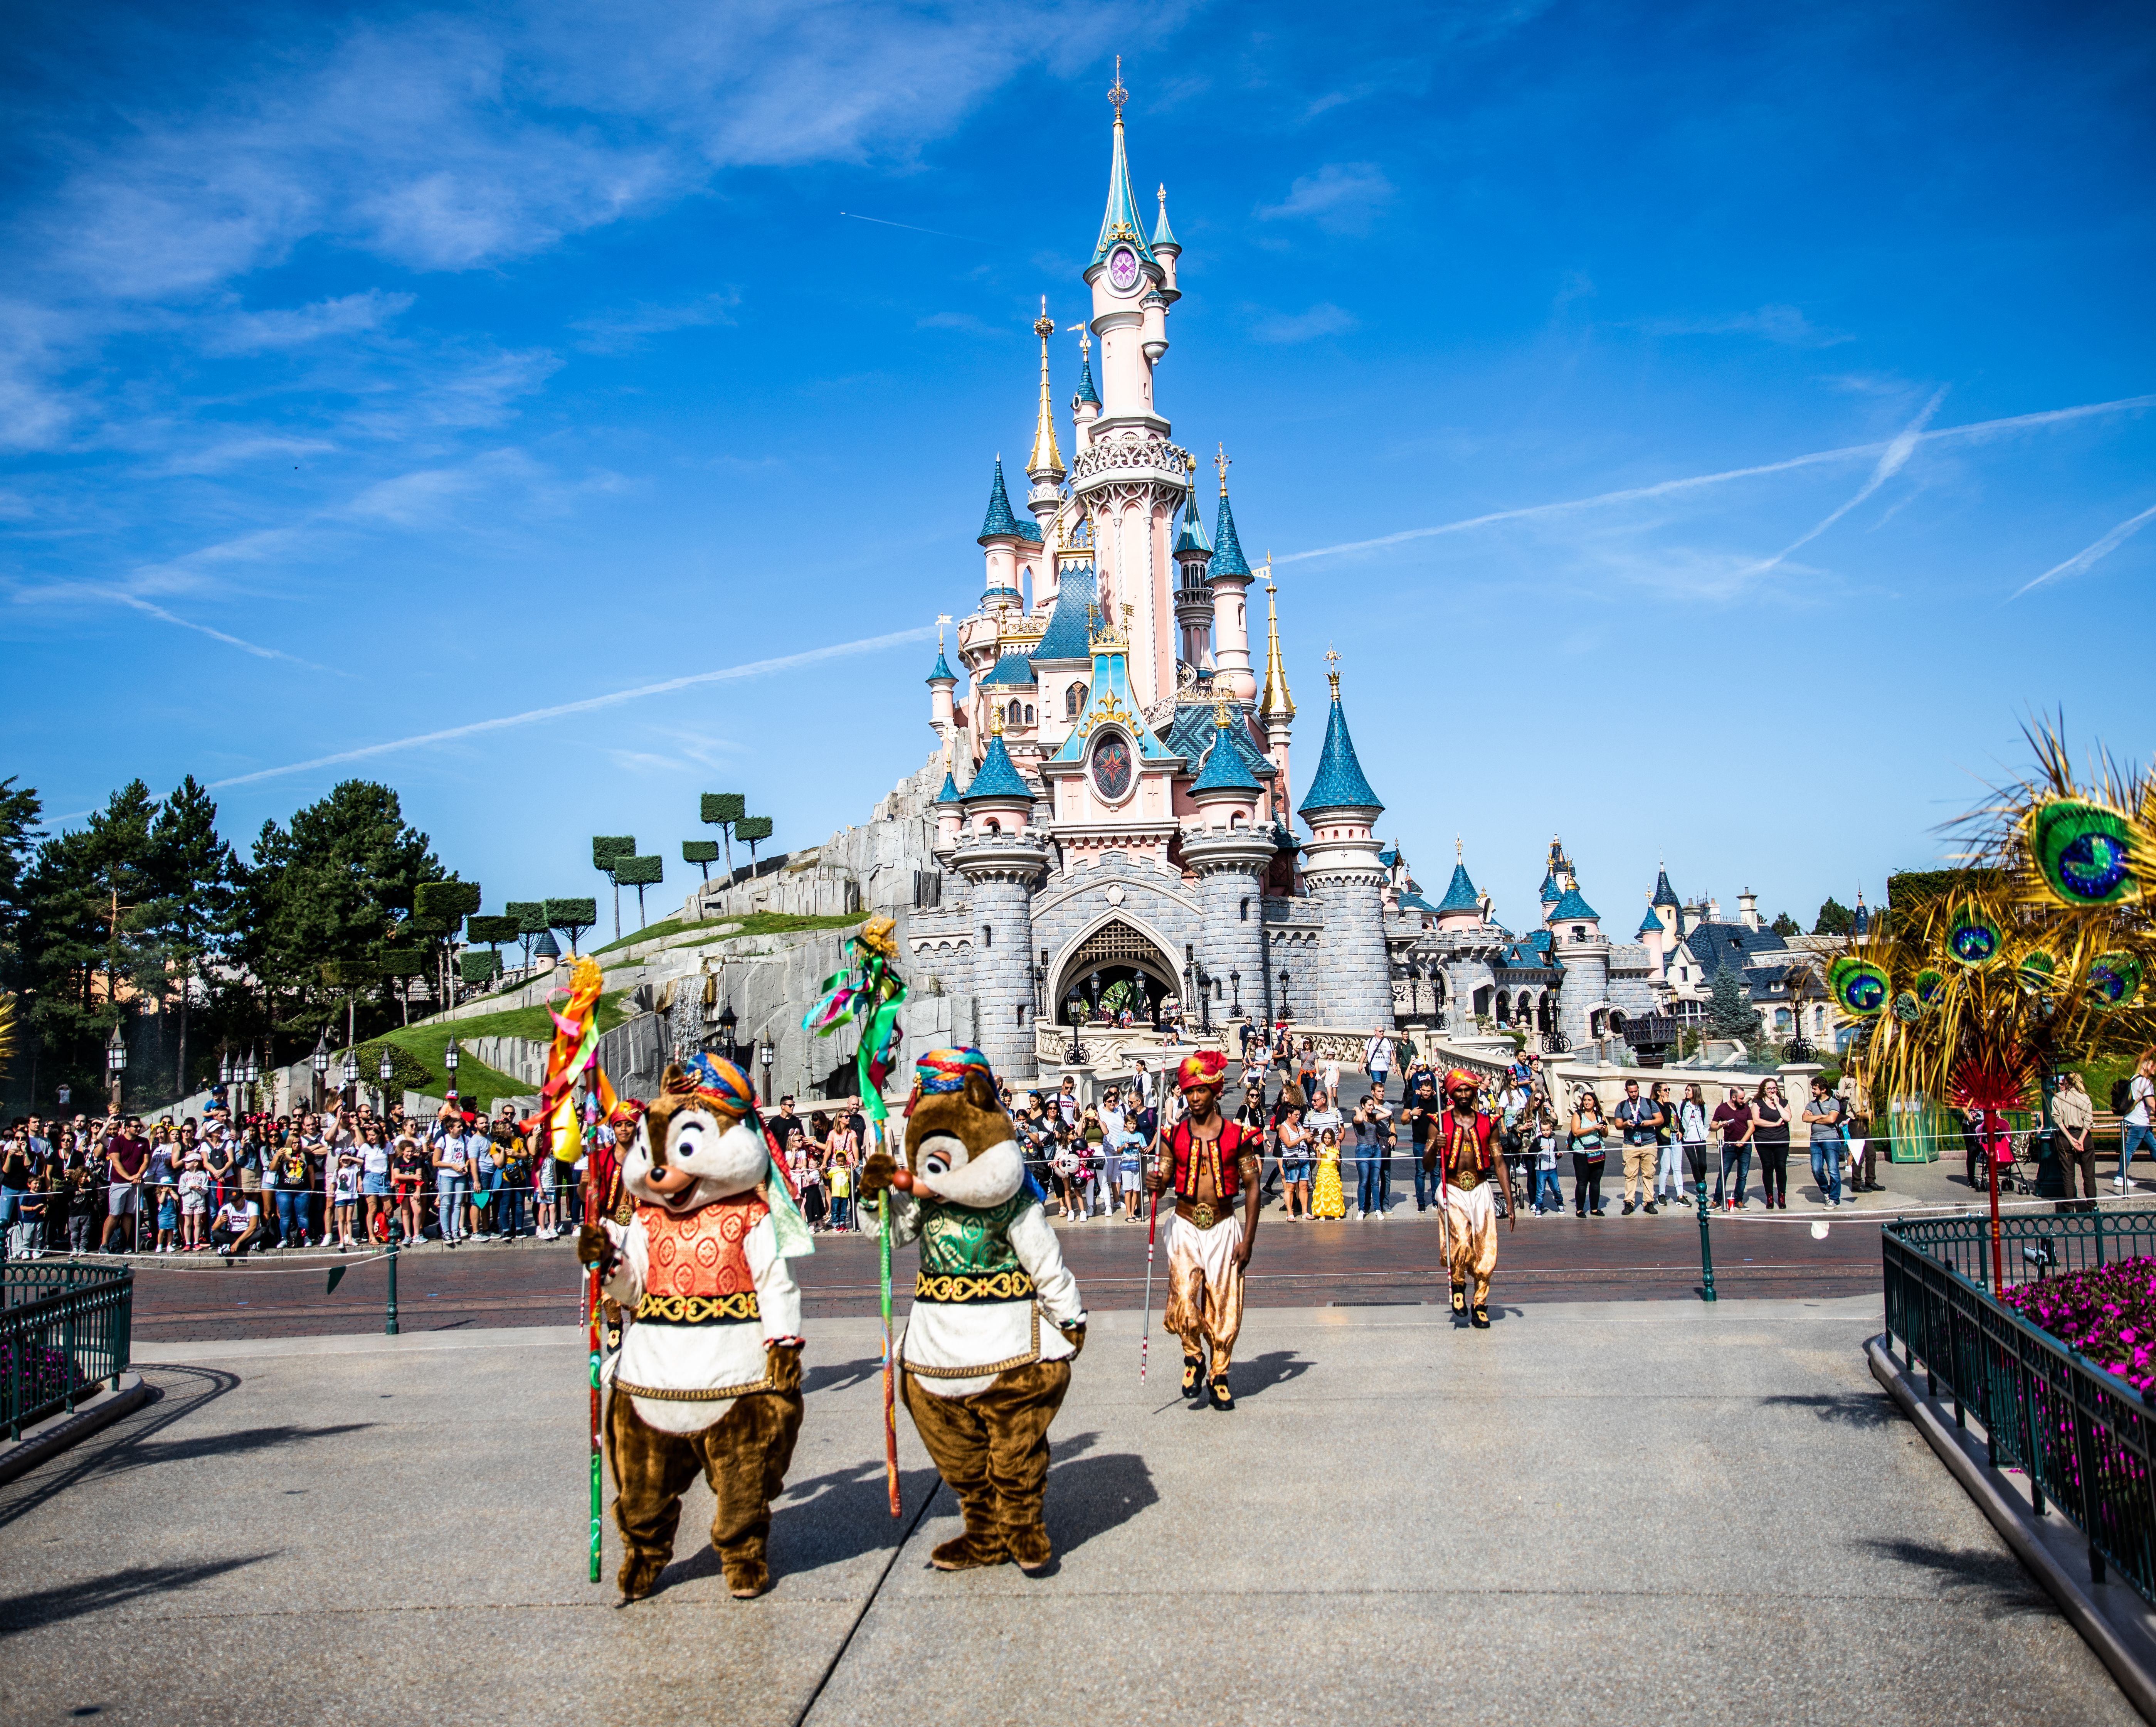 RATP biedt u gratis toegang tot Disneyland Parijs. Geniet ervan!